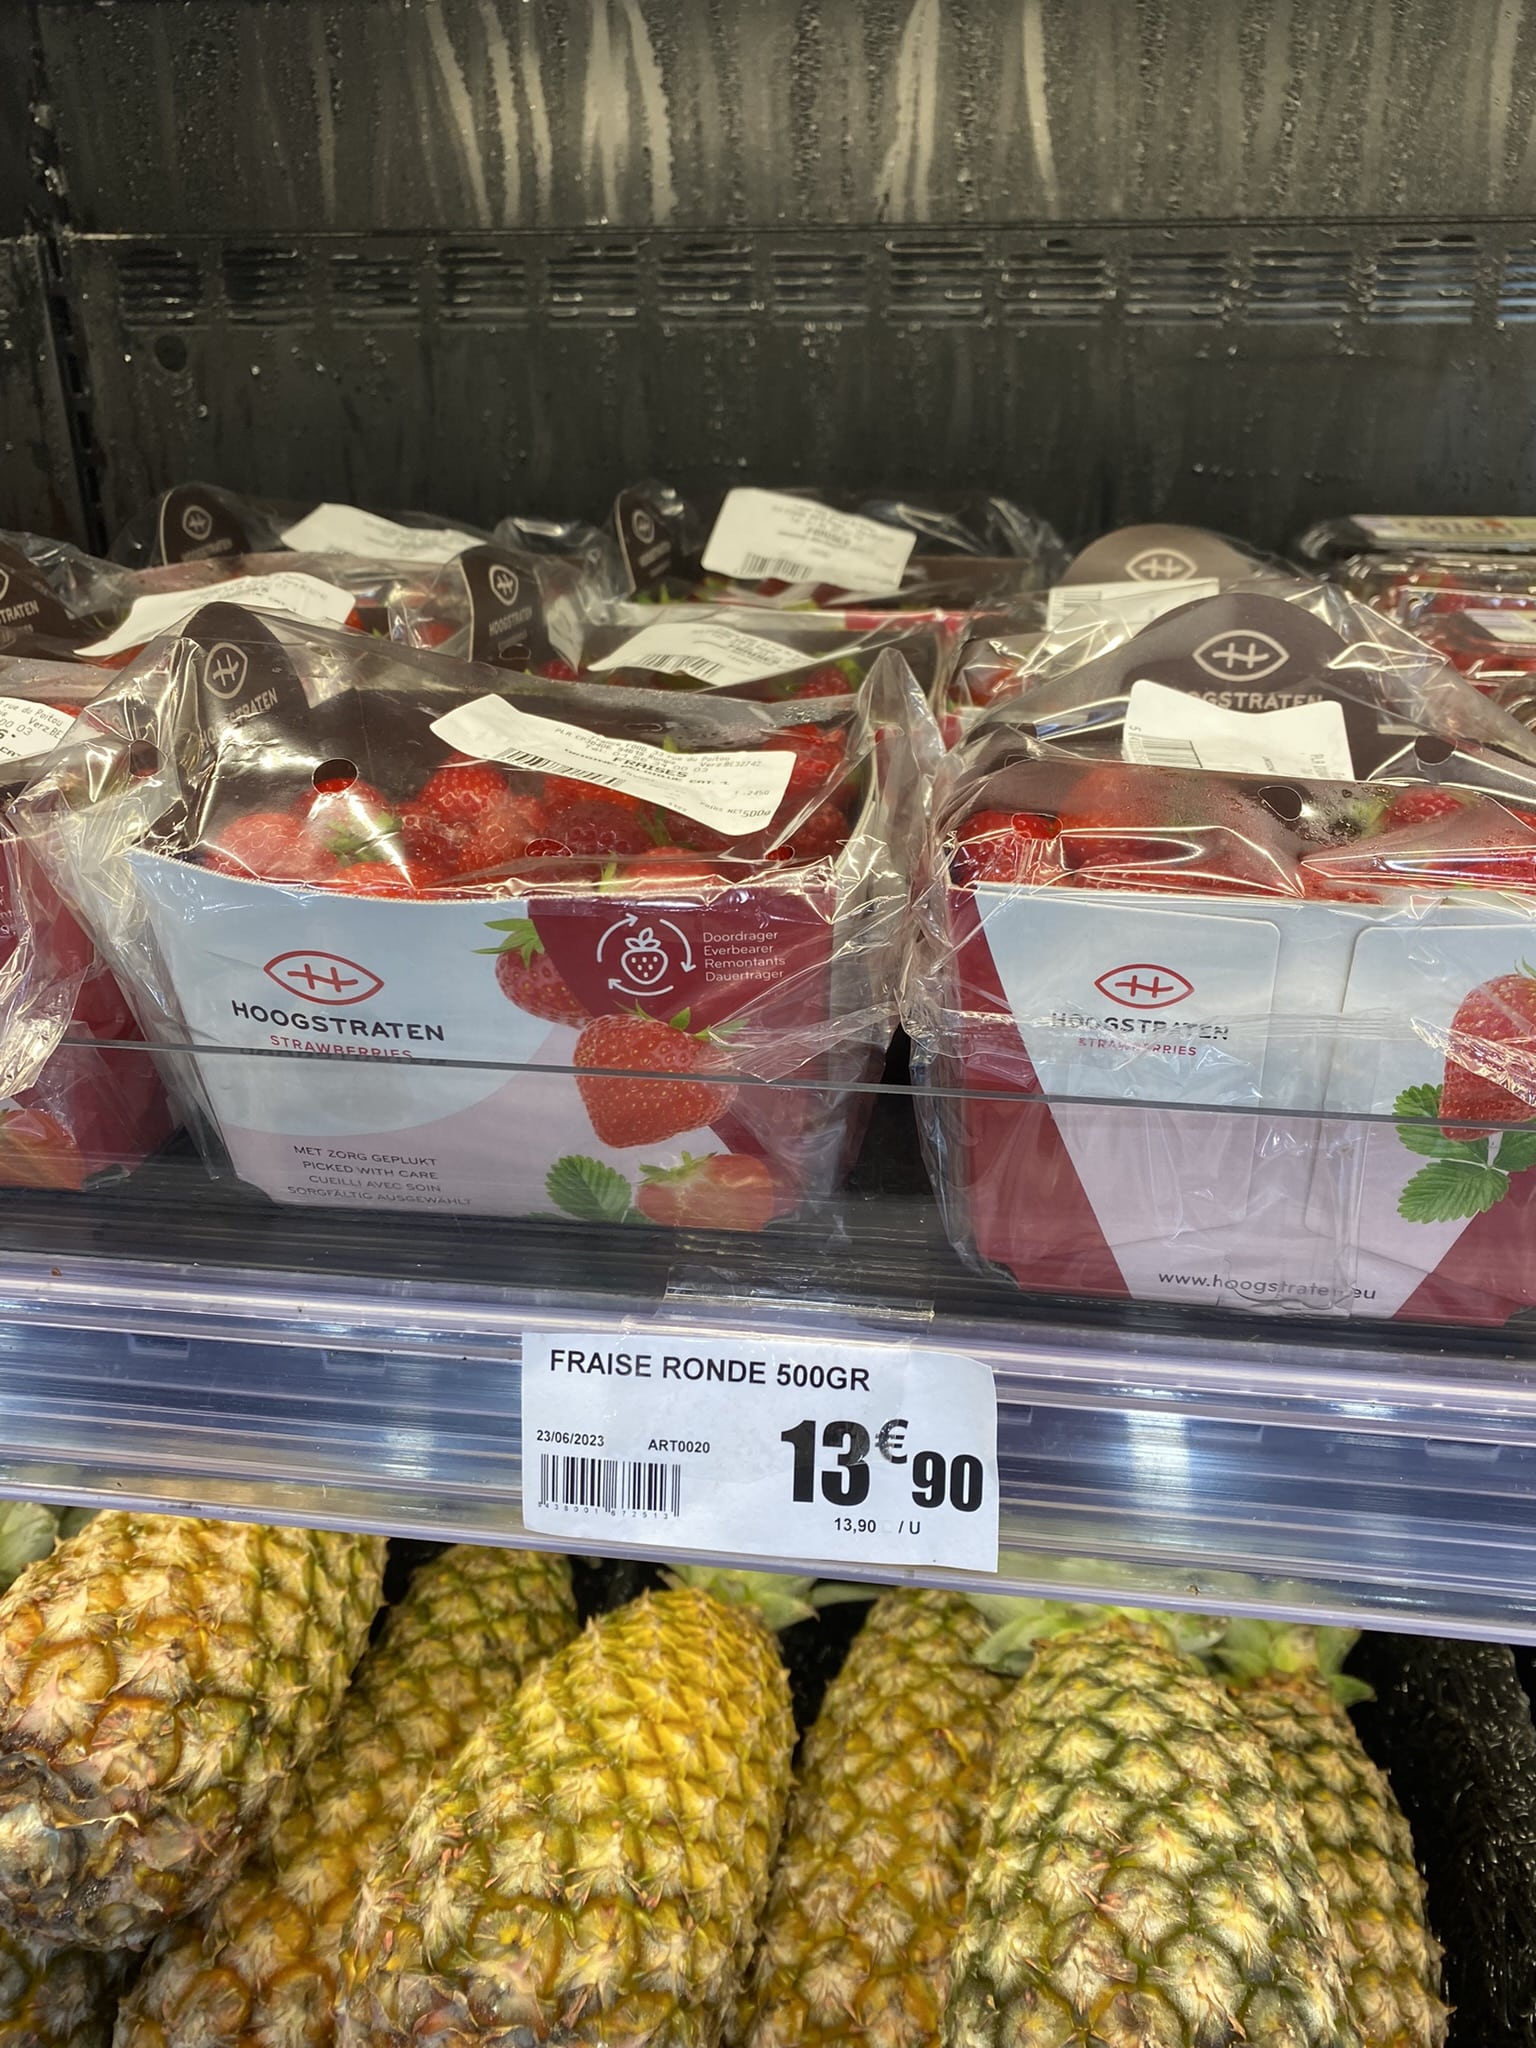 Absurd hoge prijzen in supermarkten in Cayenne